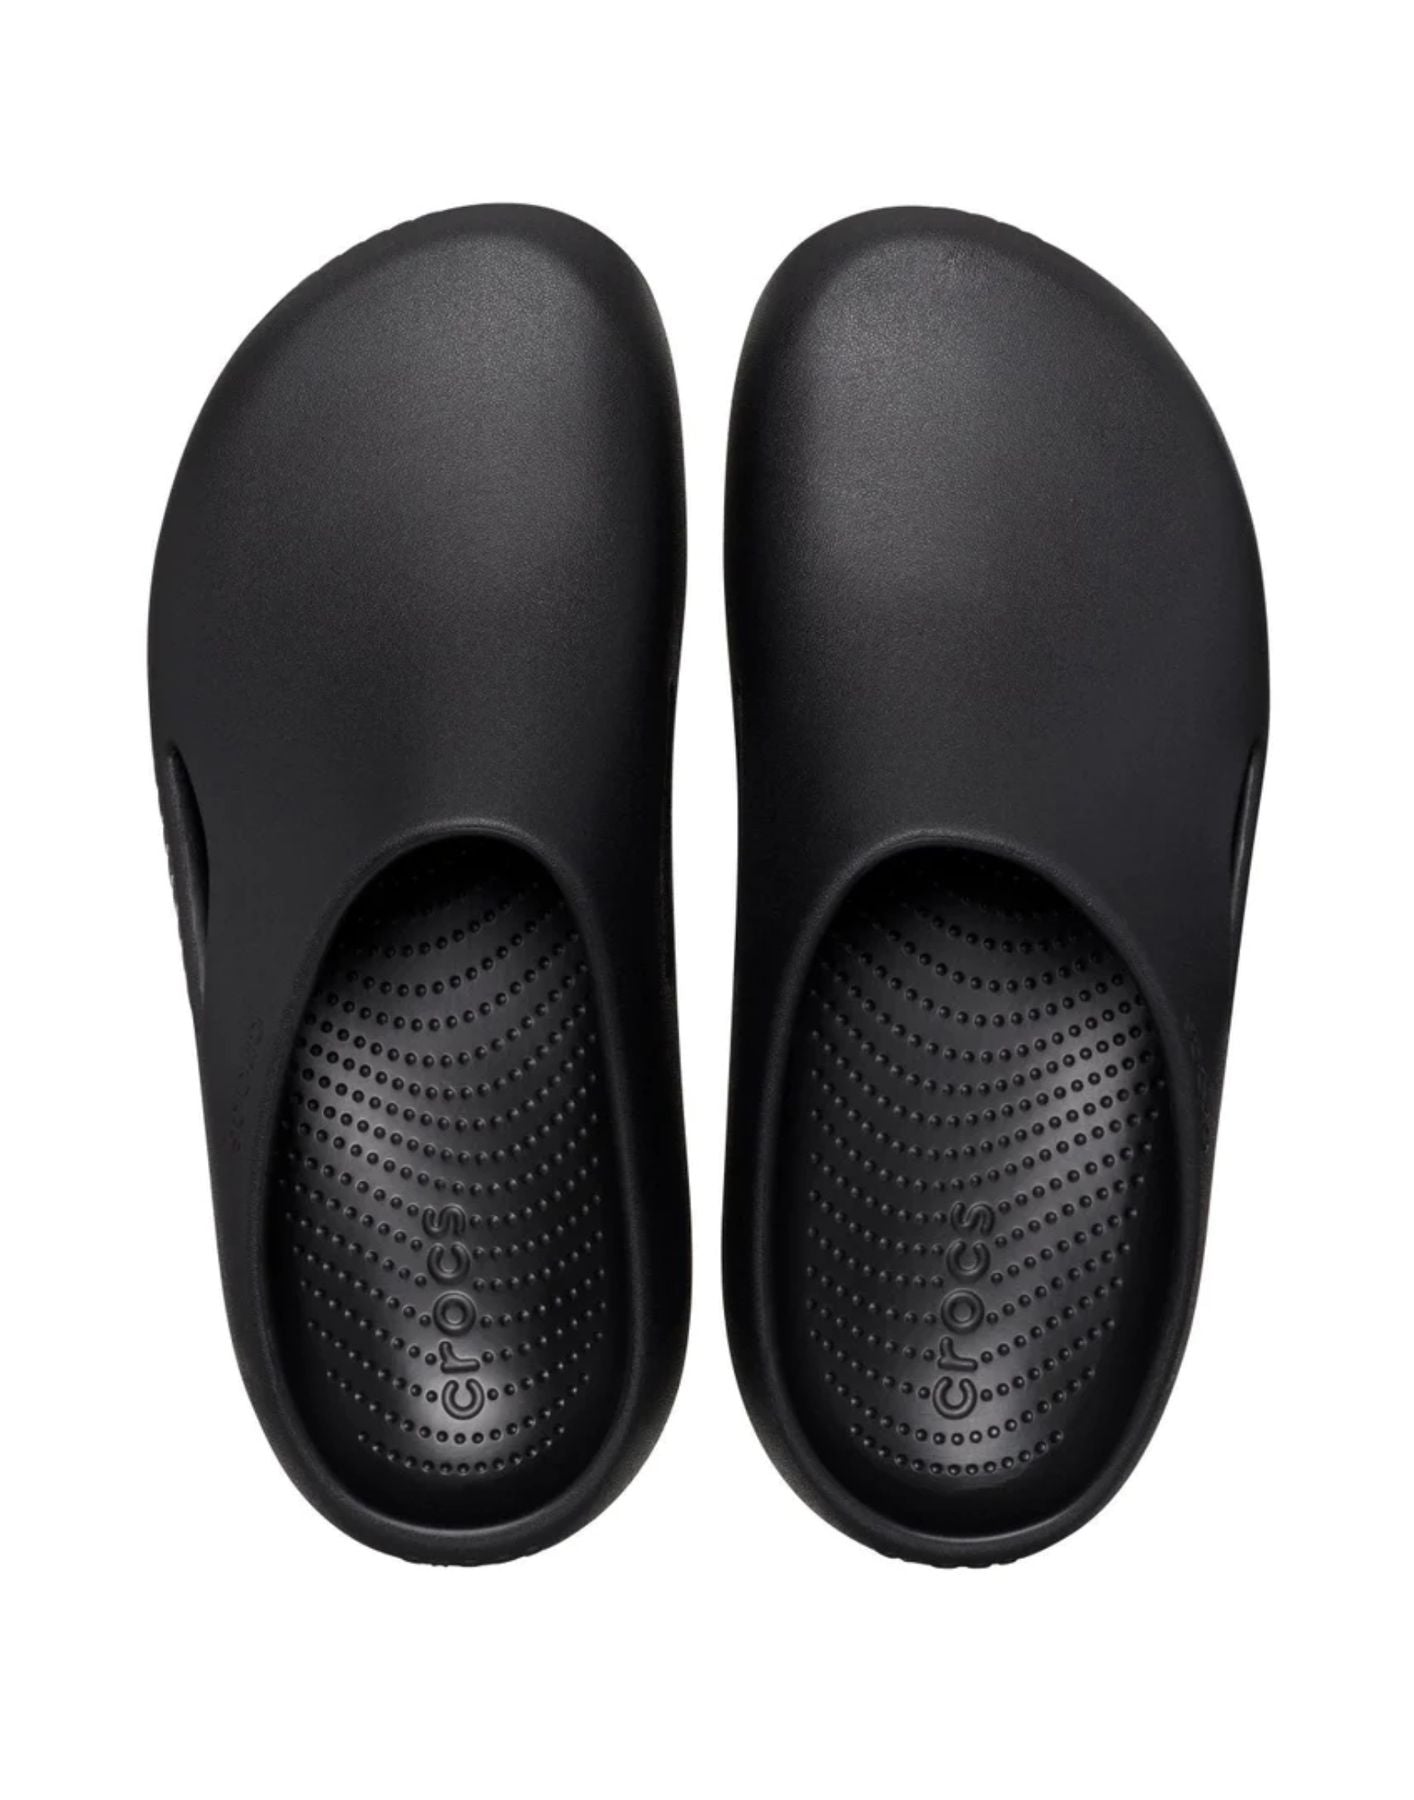 Zapatos para el hombre 208493 001 Black M Crocs